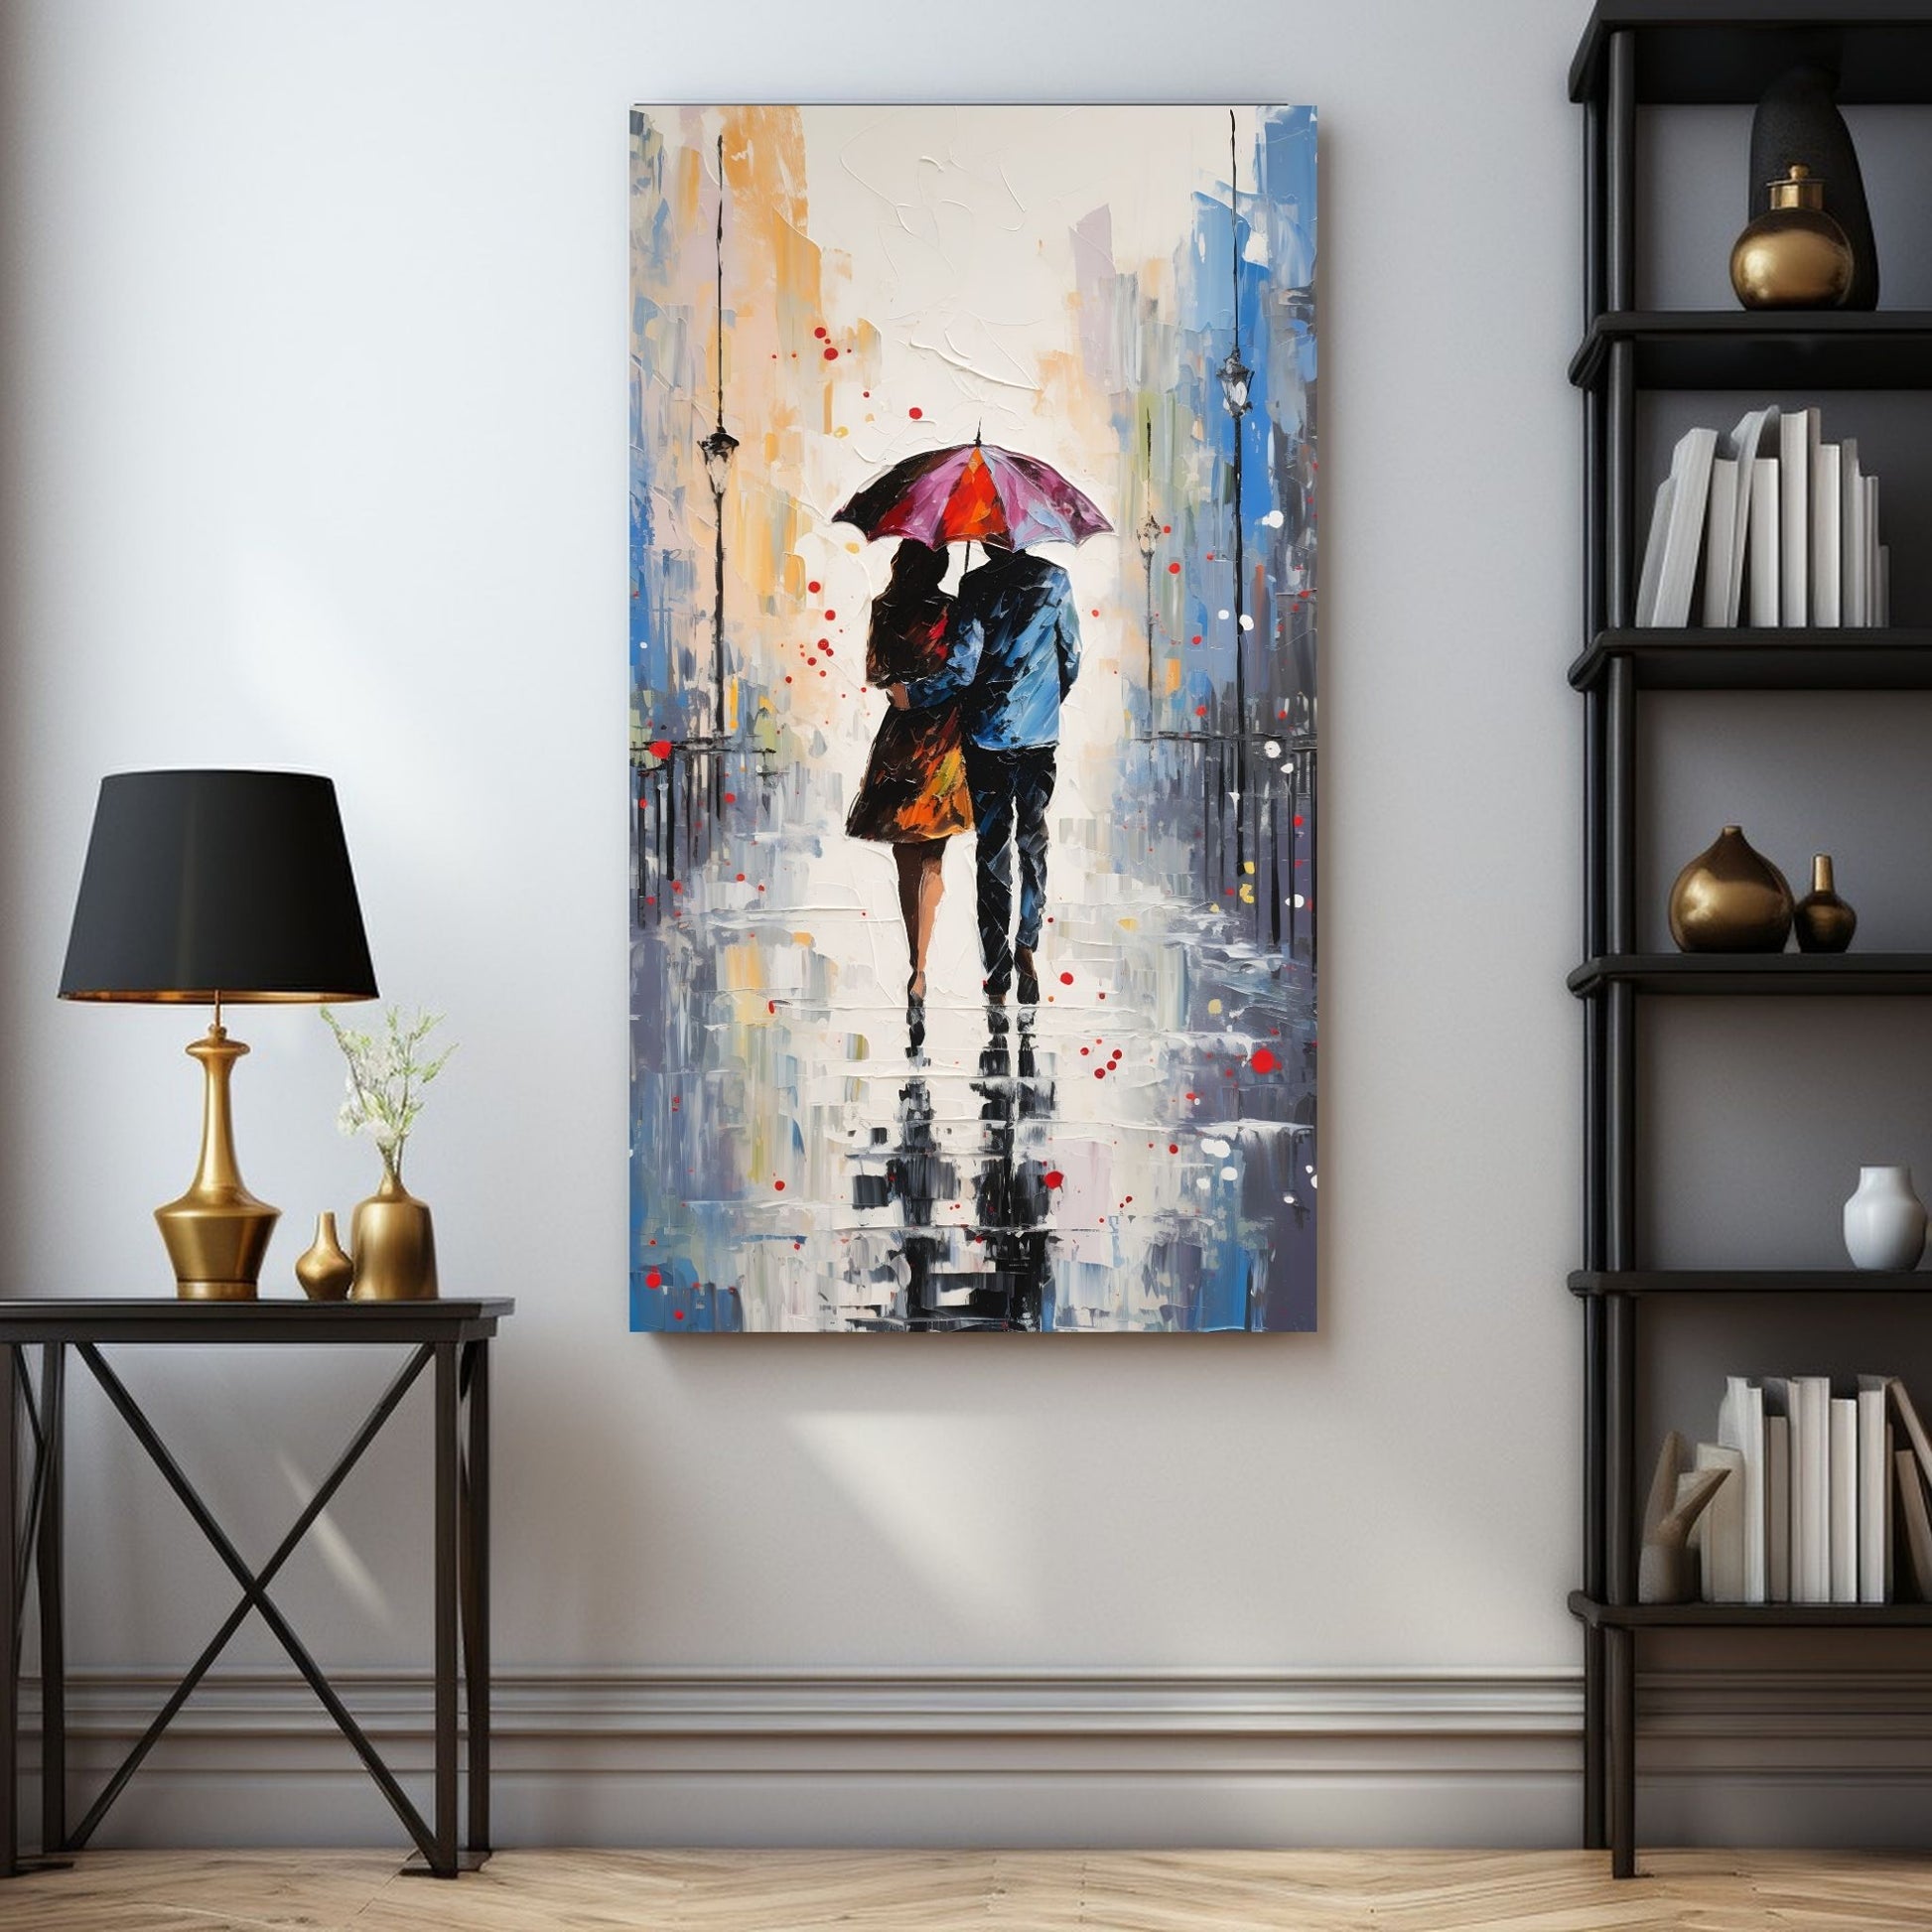 "Kjæresteparet under den røde paraplyen" - oljemaleri i grafisk trykk. Motiv av et par som går under en gul paraply langs en gate. Hun har en kåpe i oransje og han en blå dress. Miljøbildet viser motivet som plakat i en sort ramme.